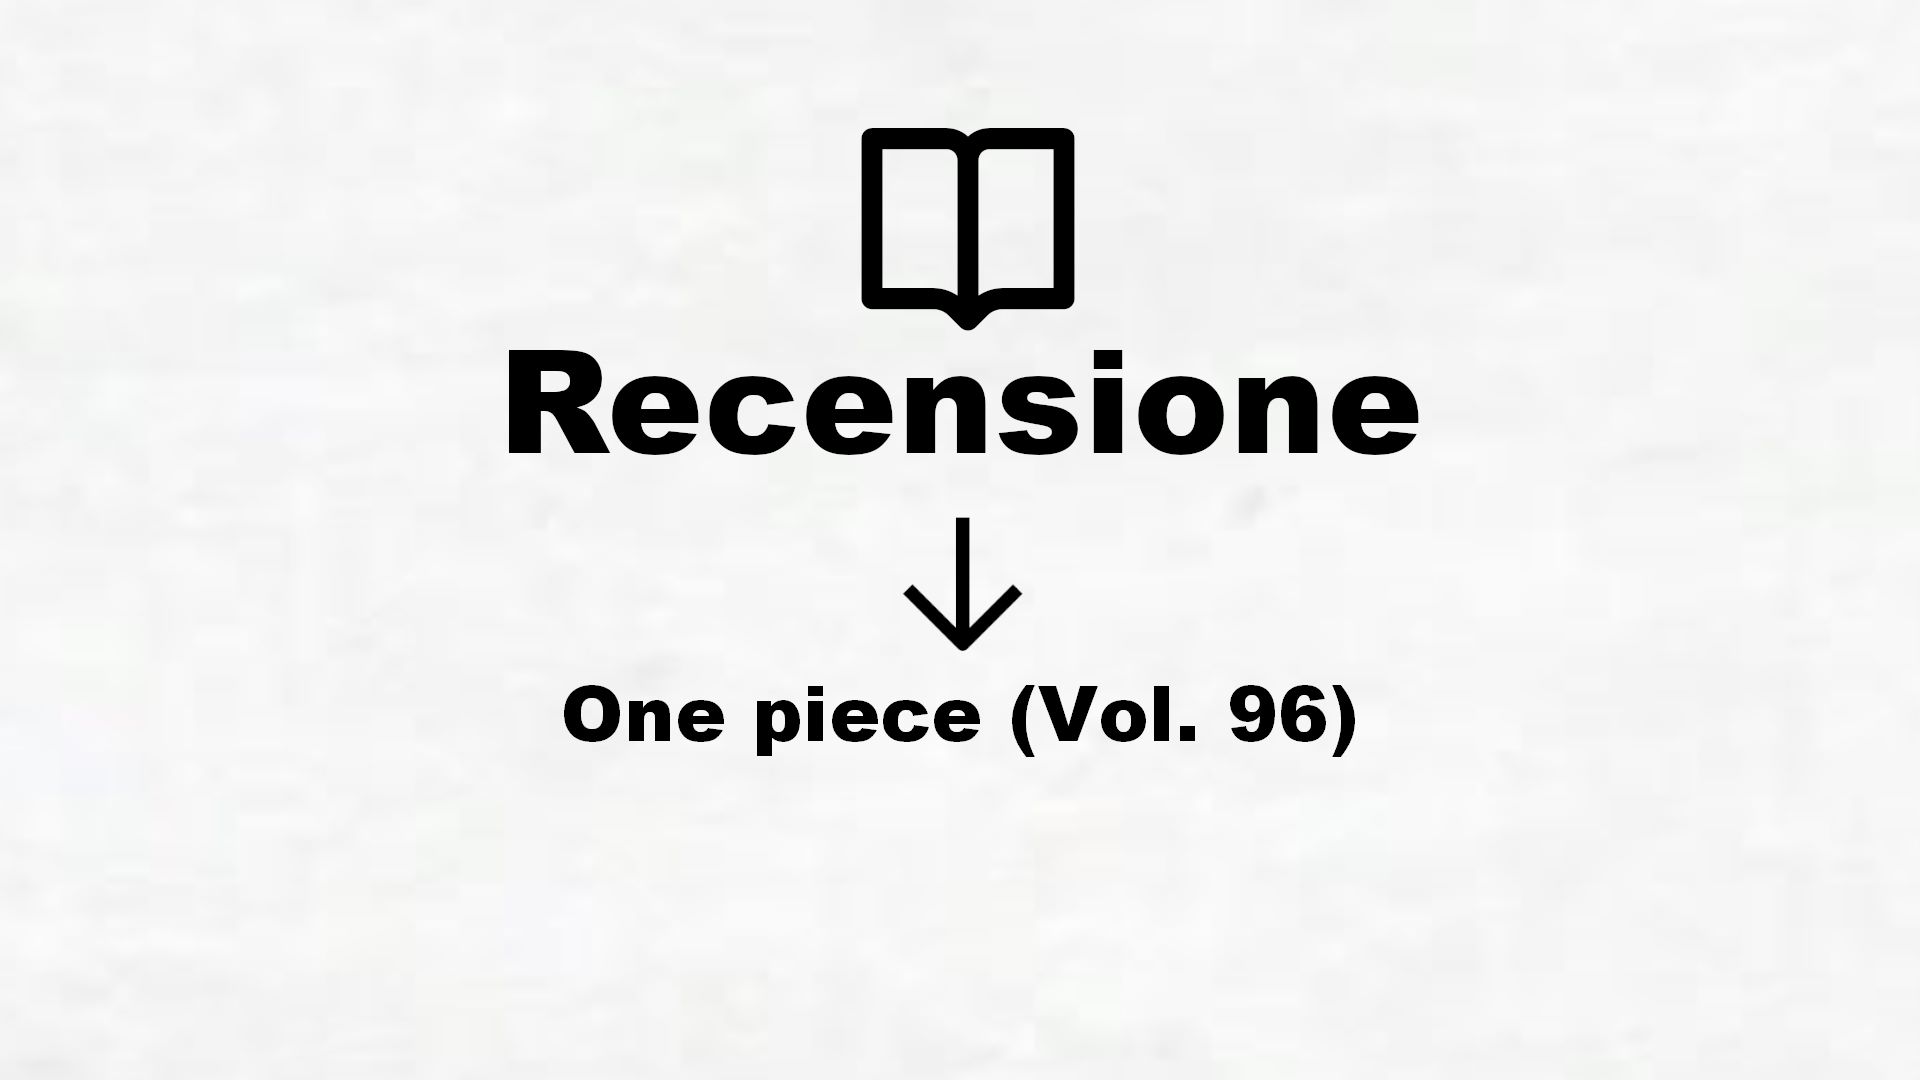 One piece (Vol. 96) – Recensione Libro